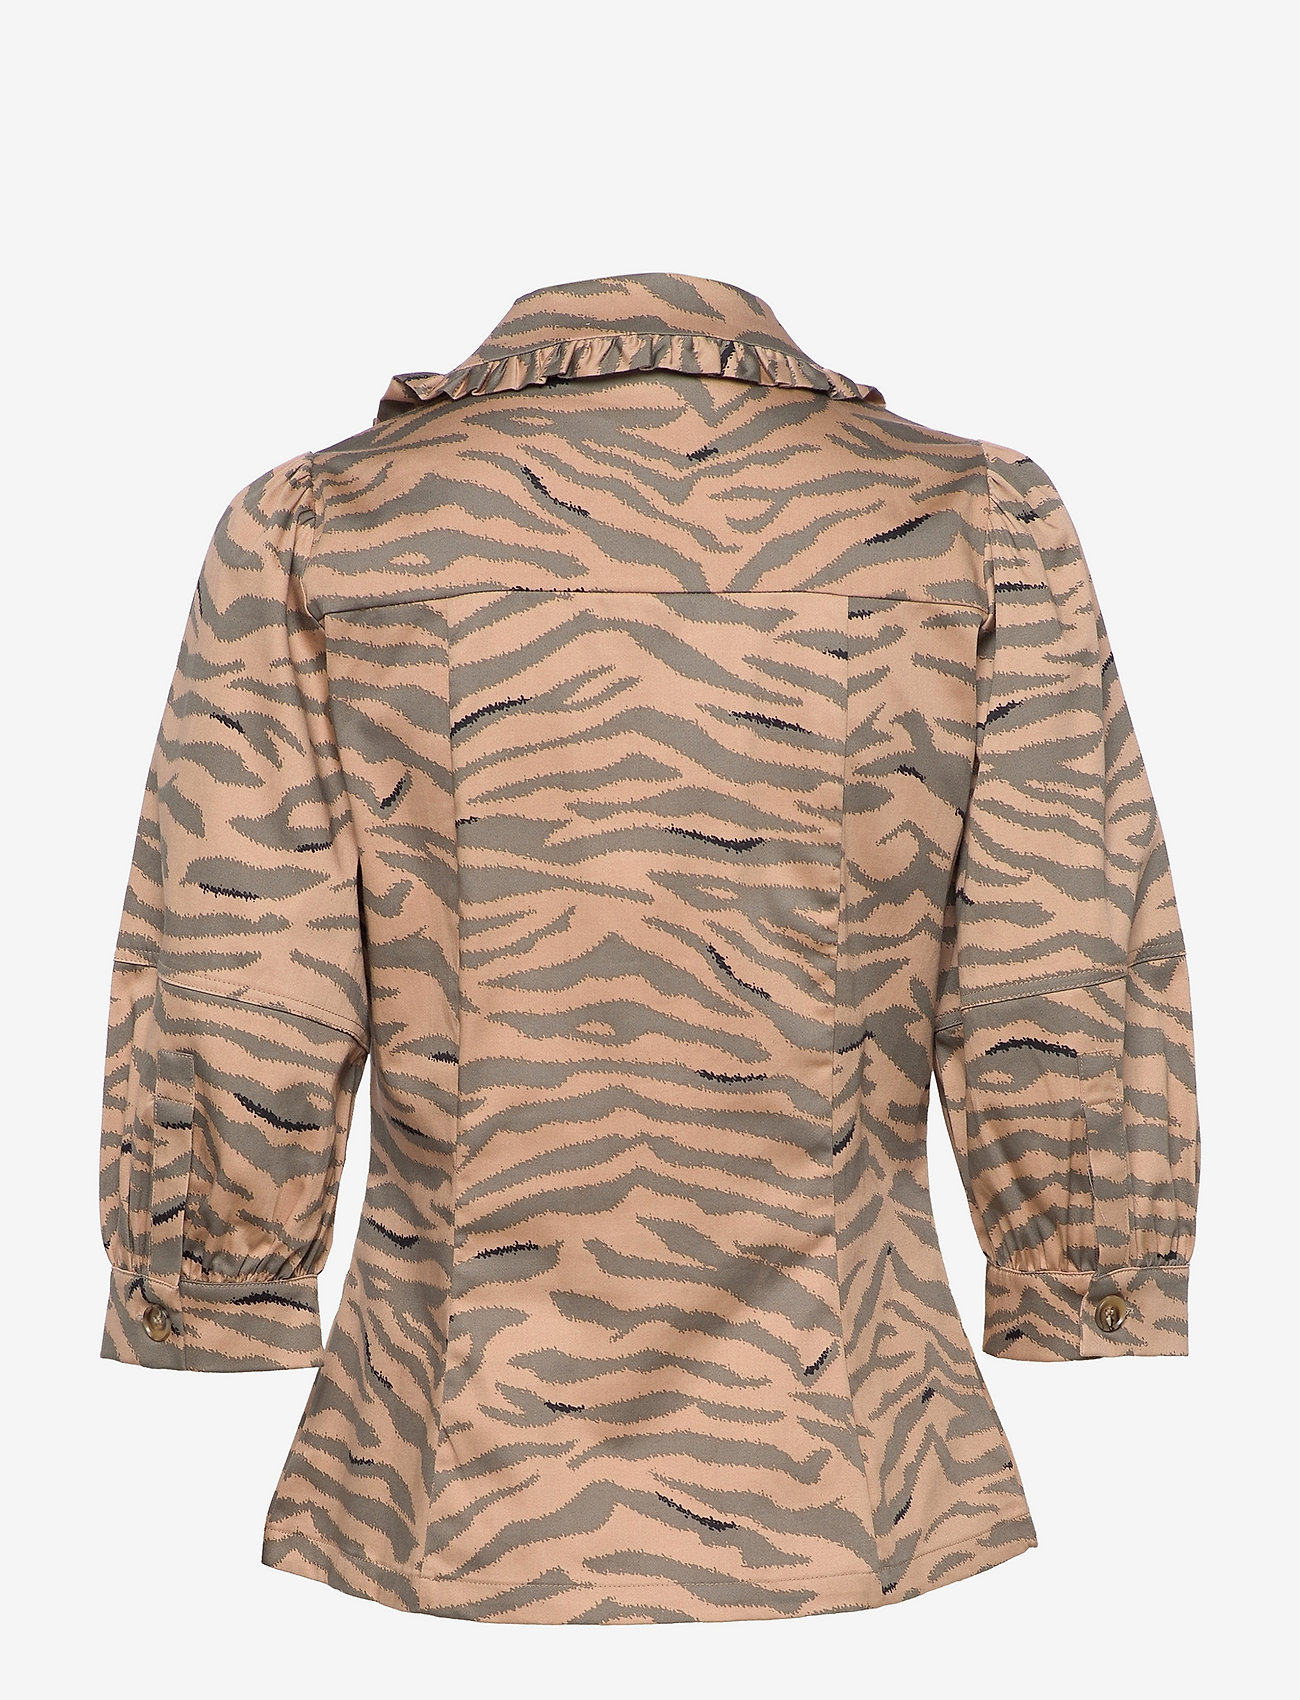 Coster Copenhagen - Shirt with big collar in zebra prin - langærmede skjorter - zebra print -941 - 1